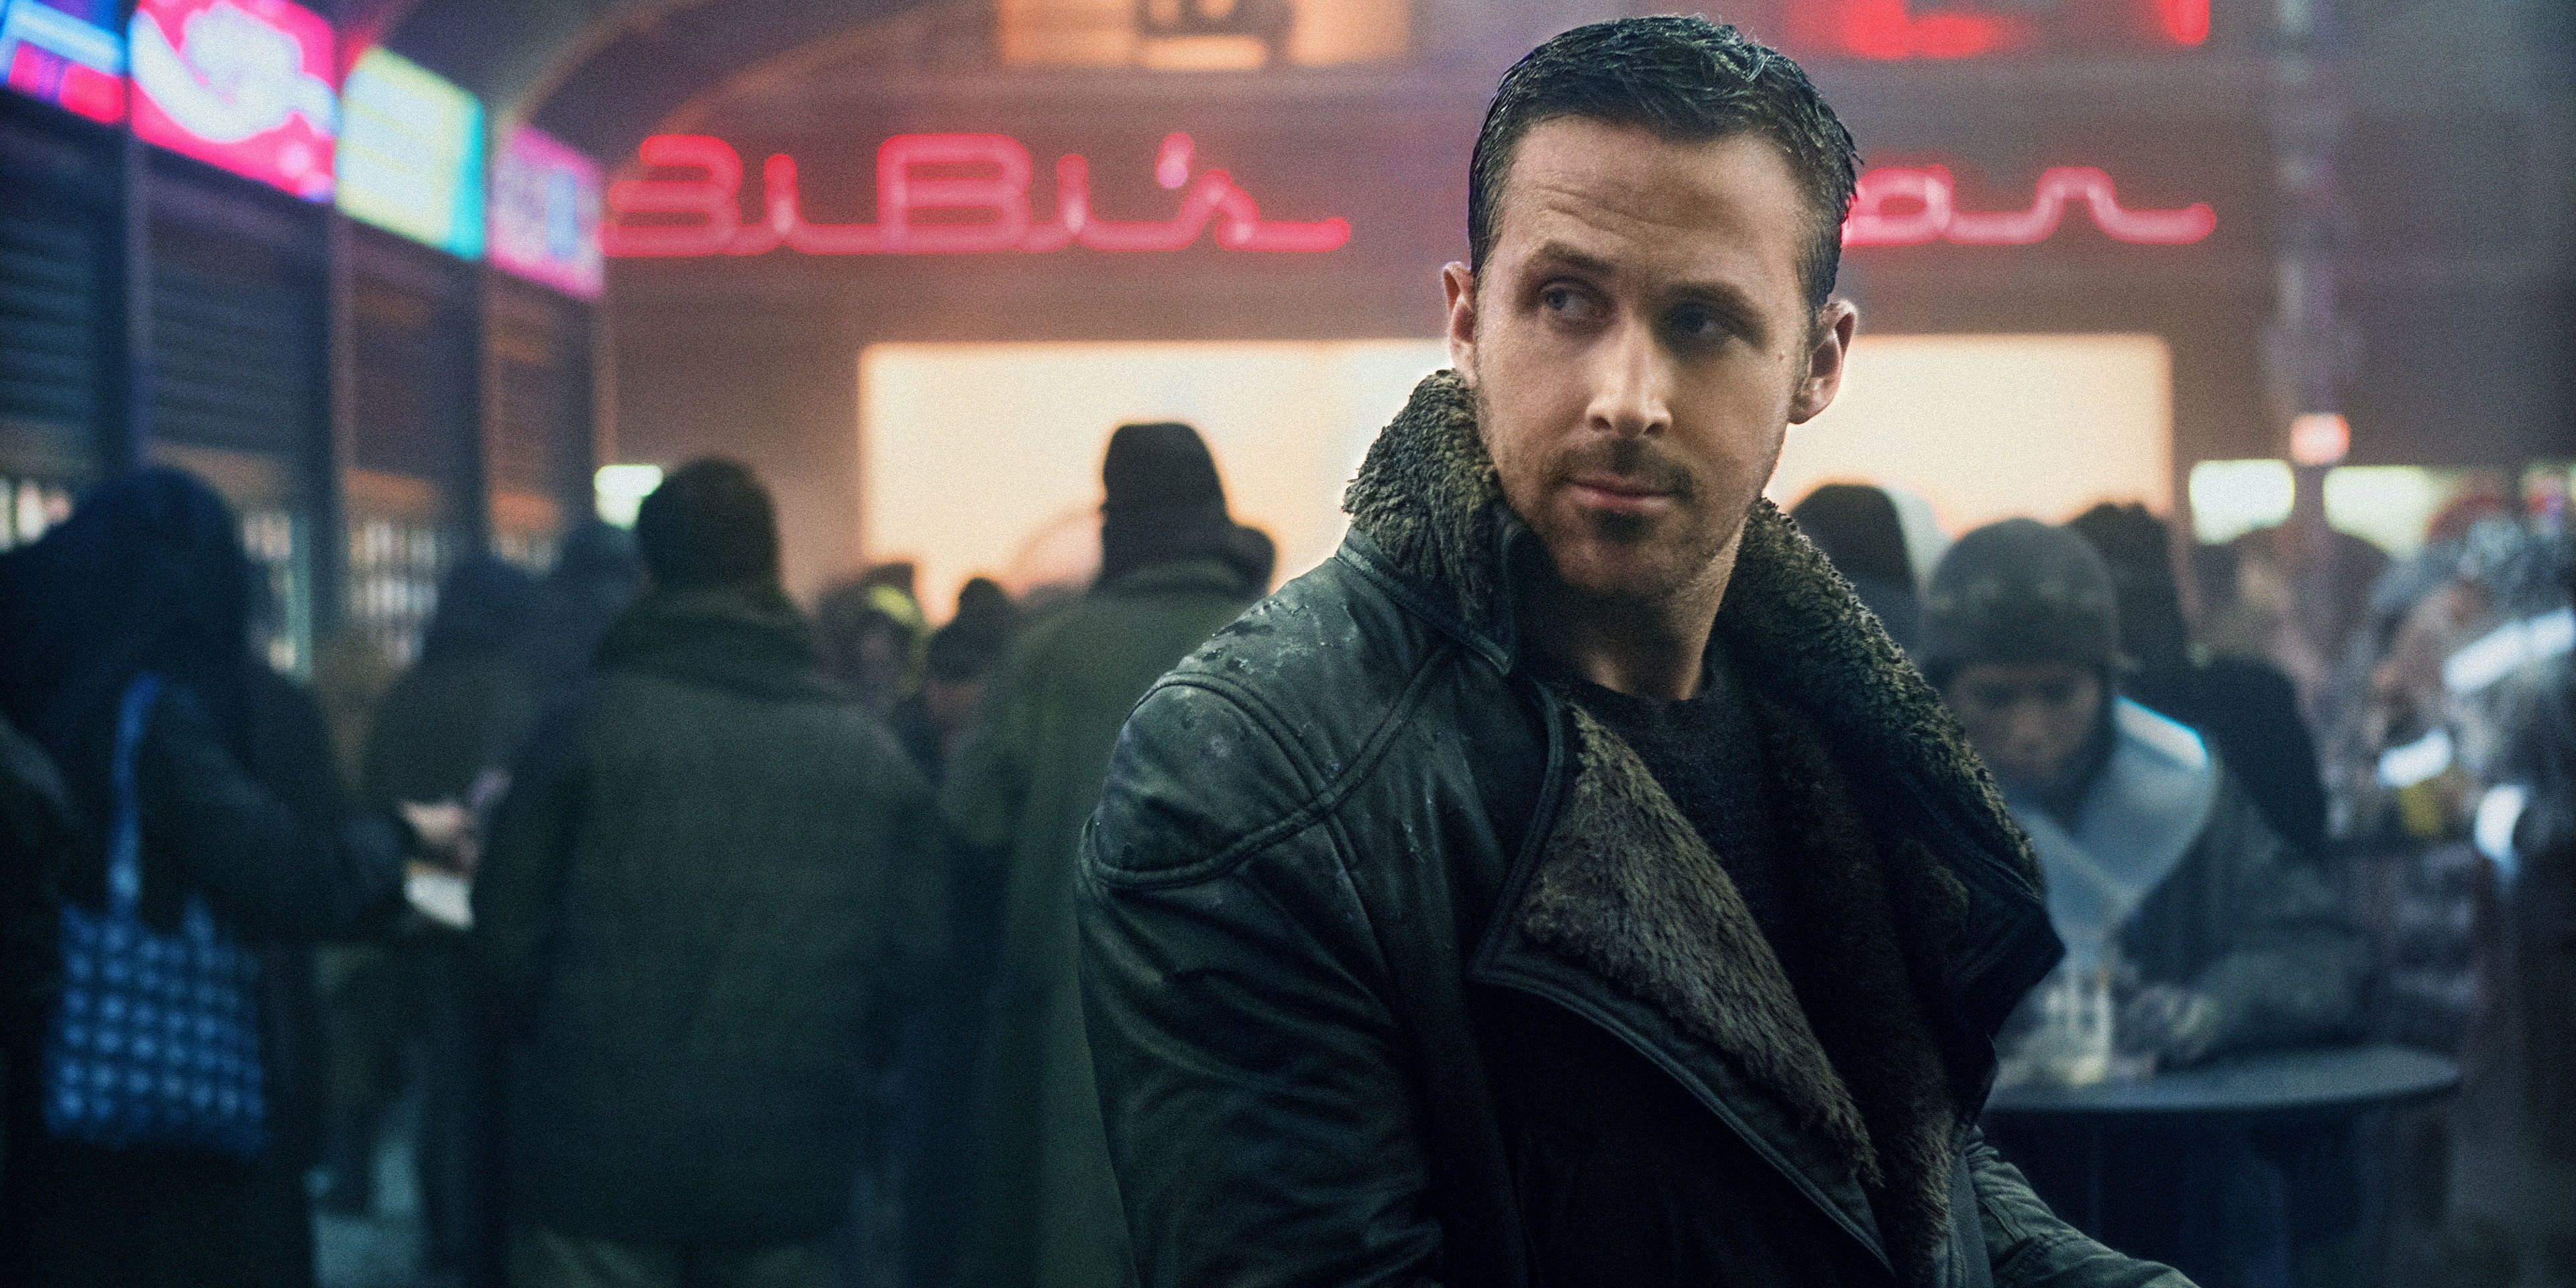 Ryan Gosling as Officer K in Blade Runner 2049